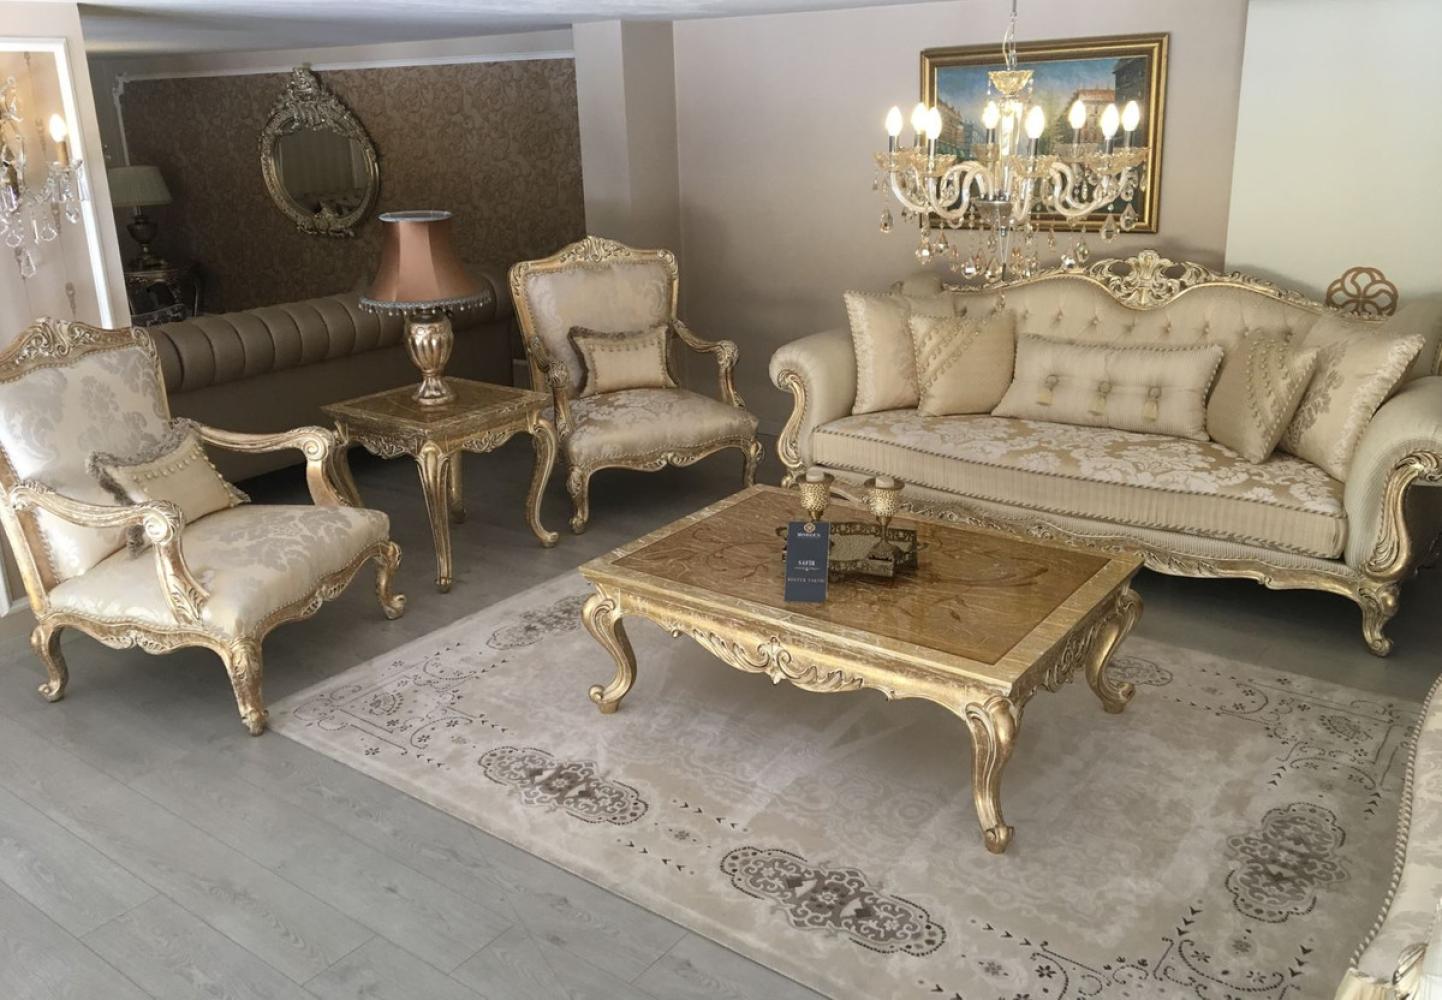 Casa Padrino Luxus Barock Wohnzimmer Set Gold / Antik Gold - 2 Sofas & 2 Sessel & 1 Couchtisch & 2 Beistelltische - Handgefertigte Wohnzimmer Möbel im Barockstil - Edel & Prunkvoll Bild 1